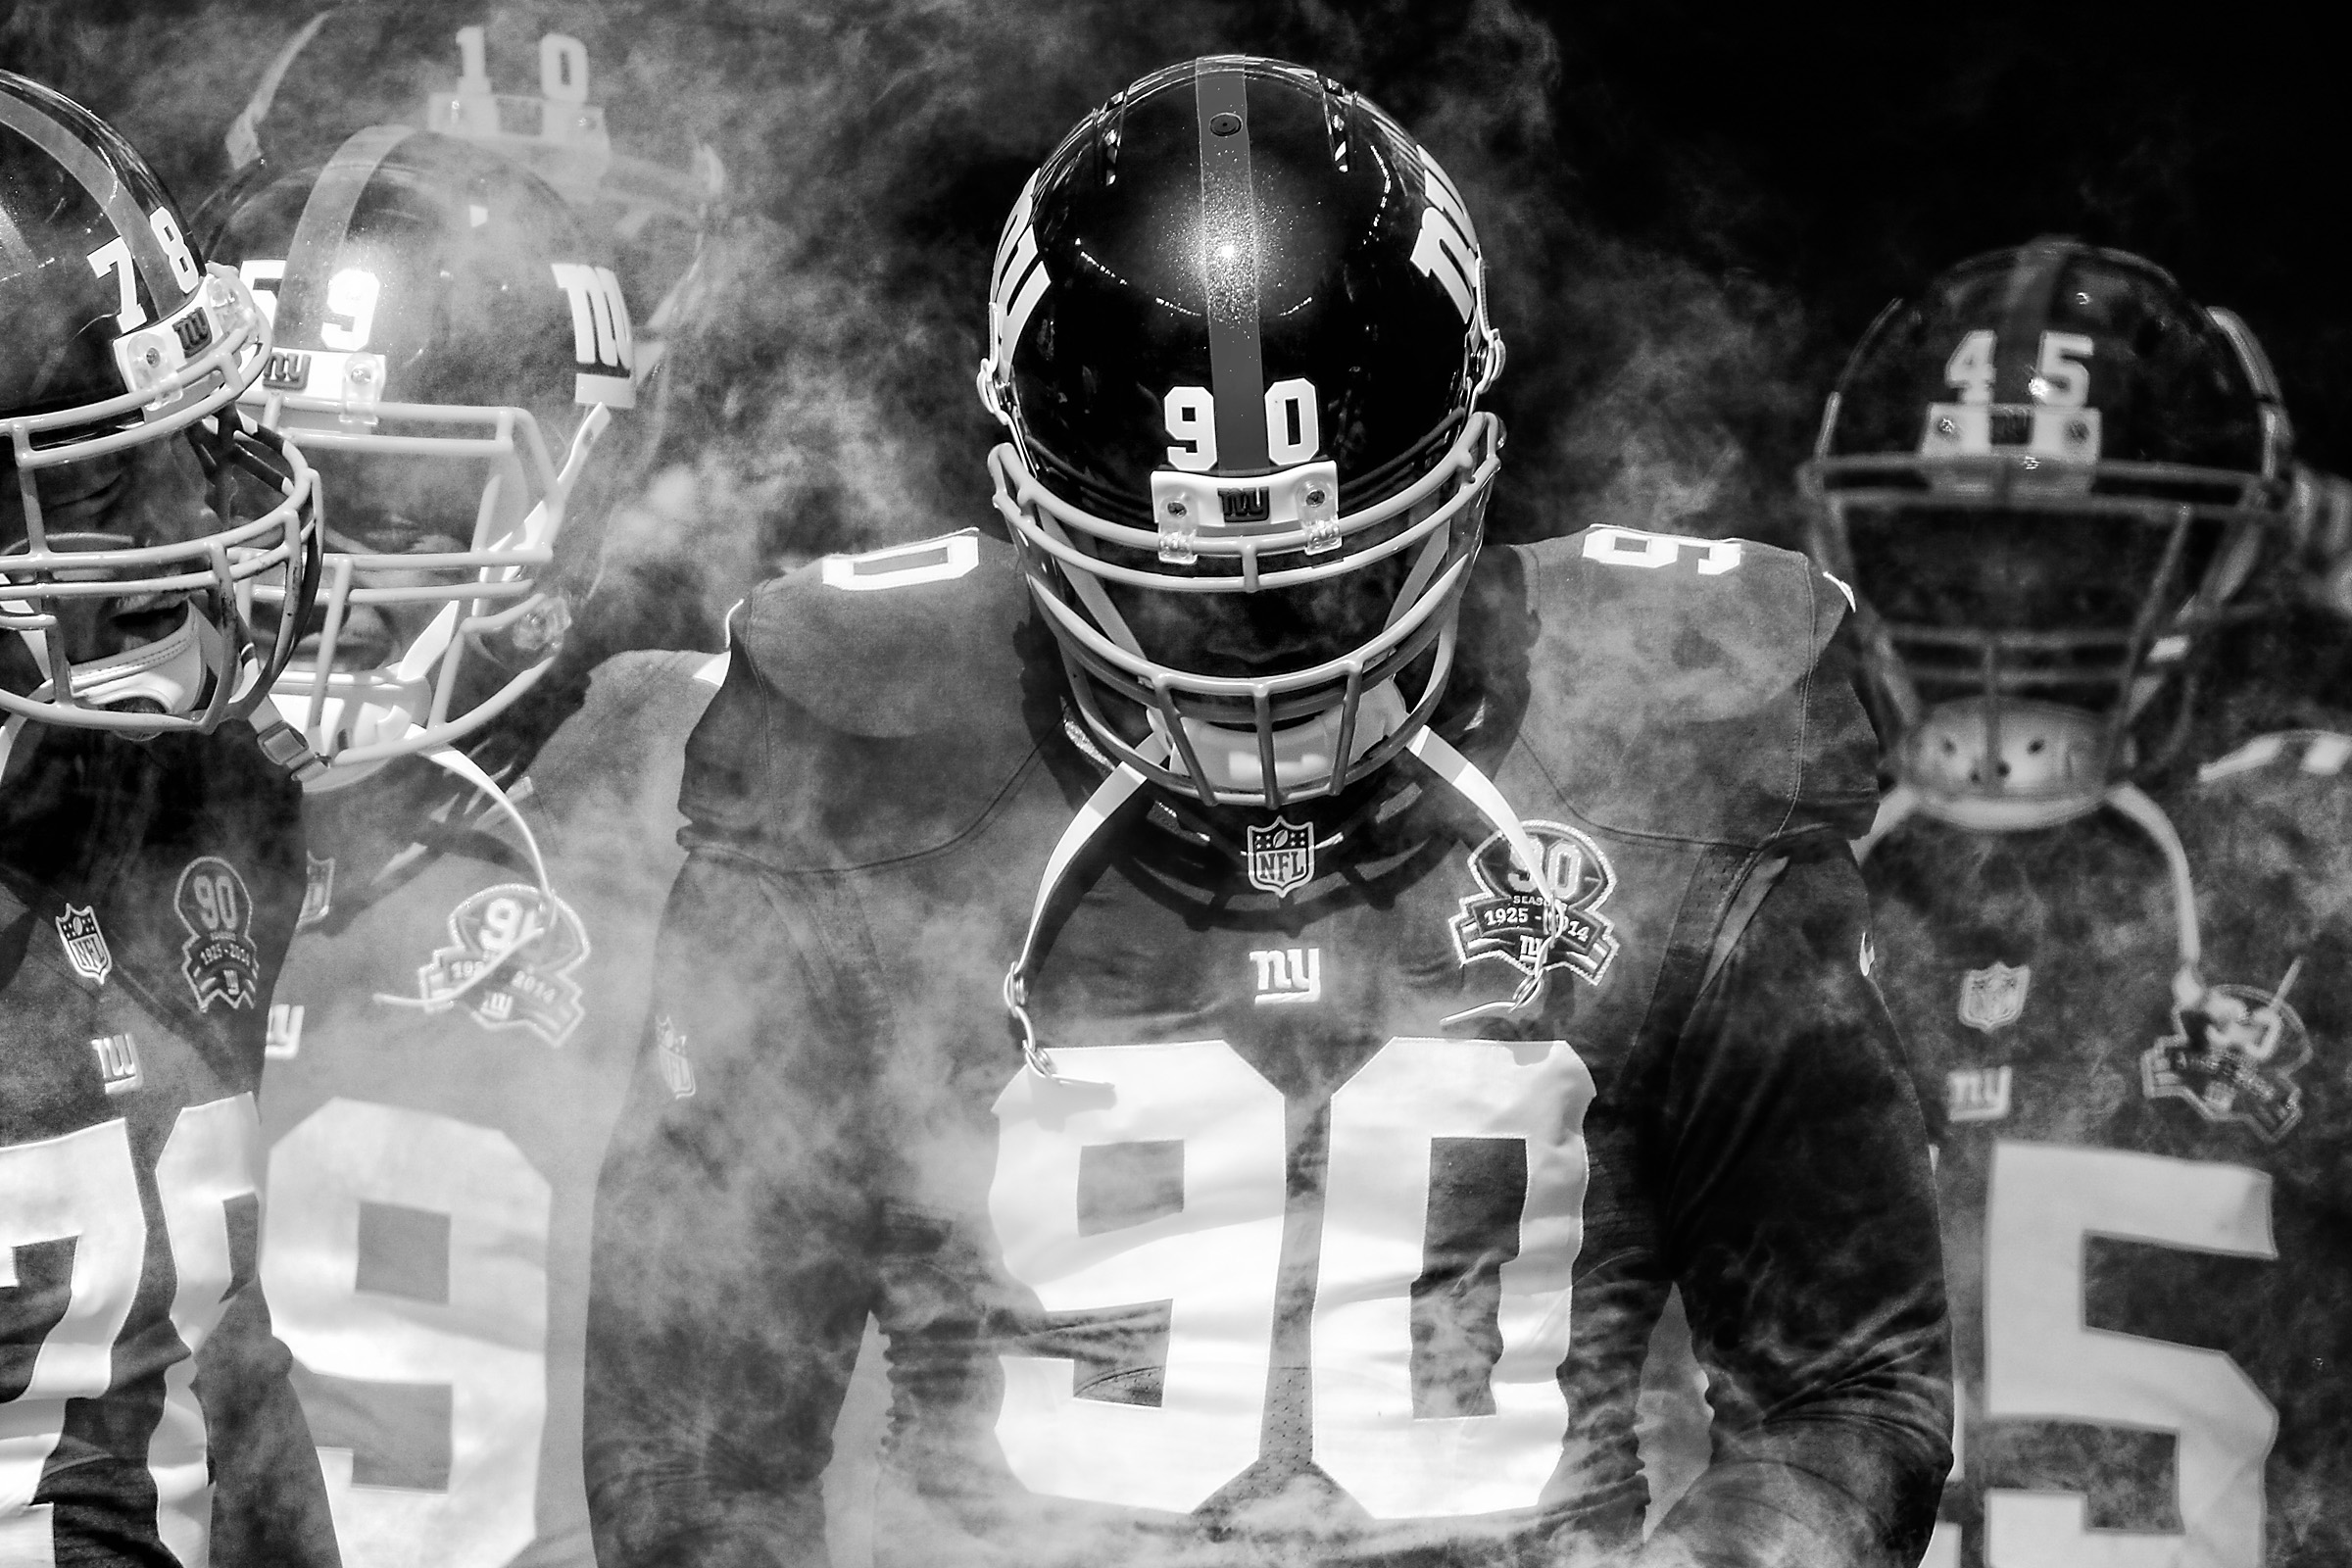 Giants in the smoke (final).jpg